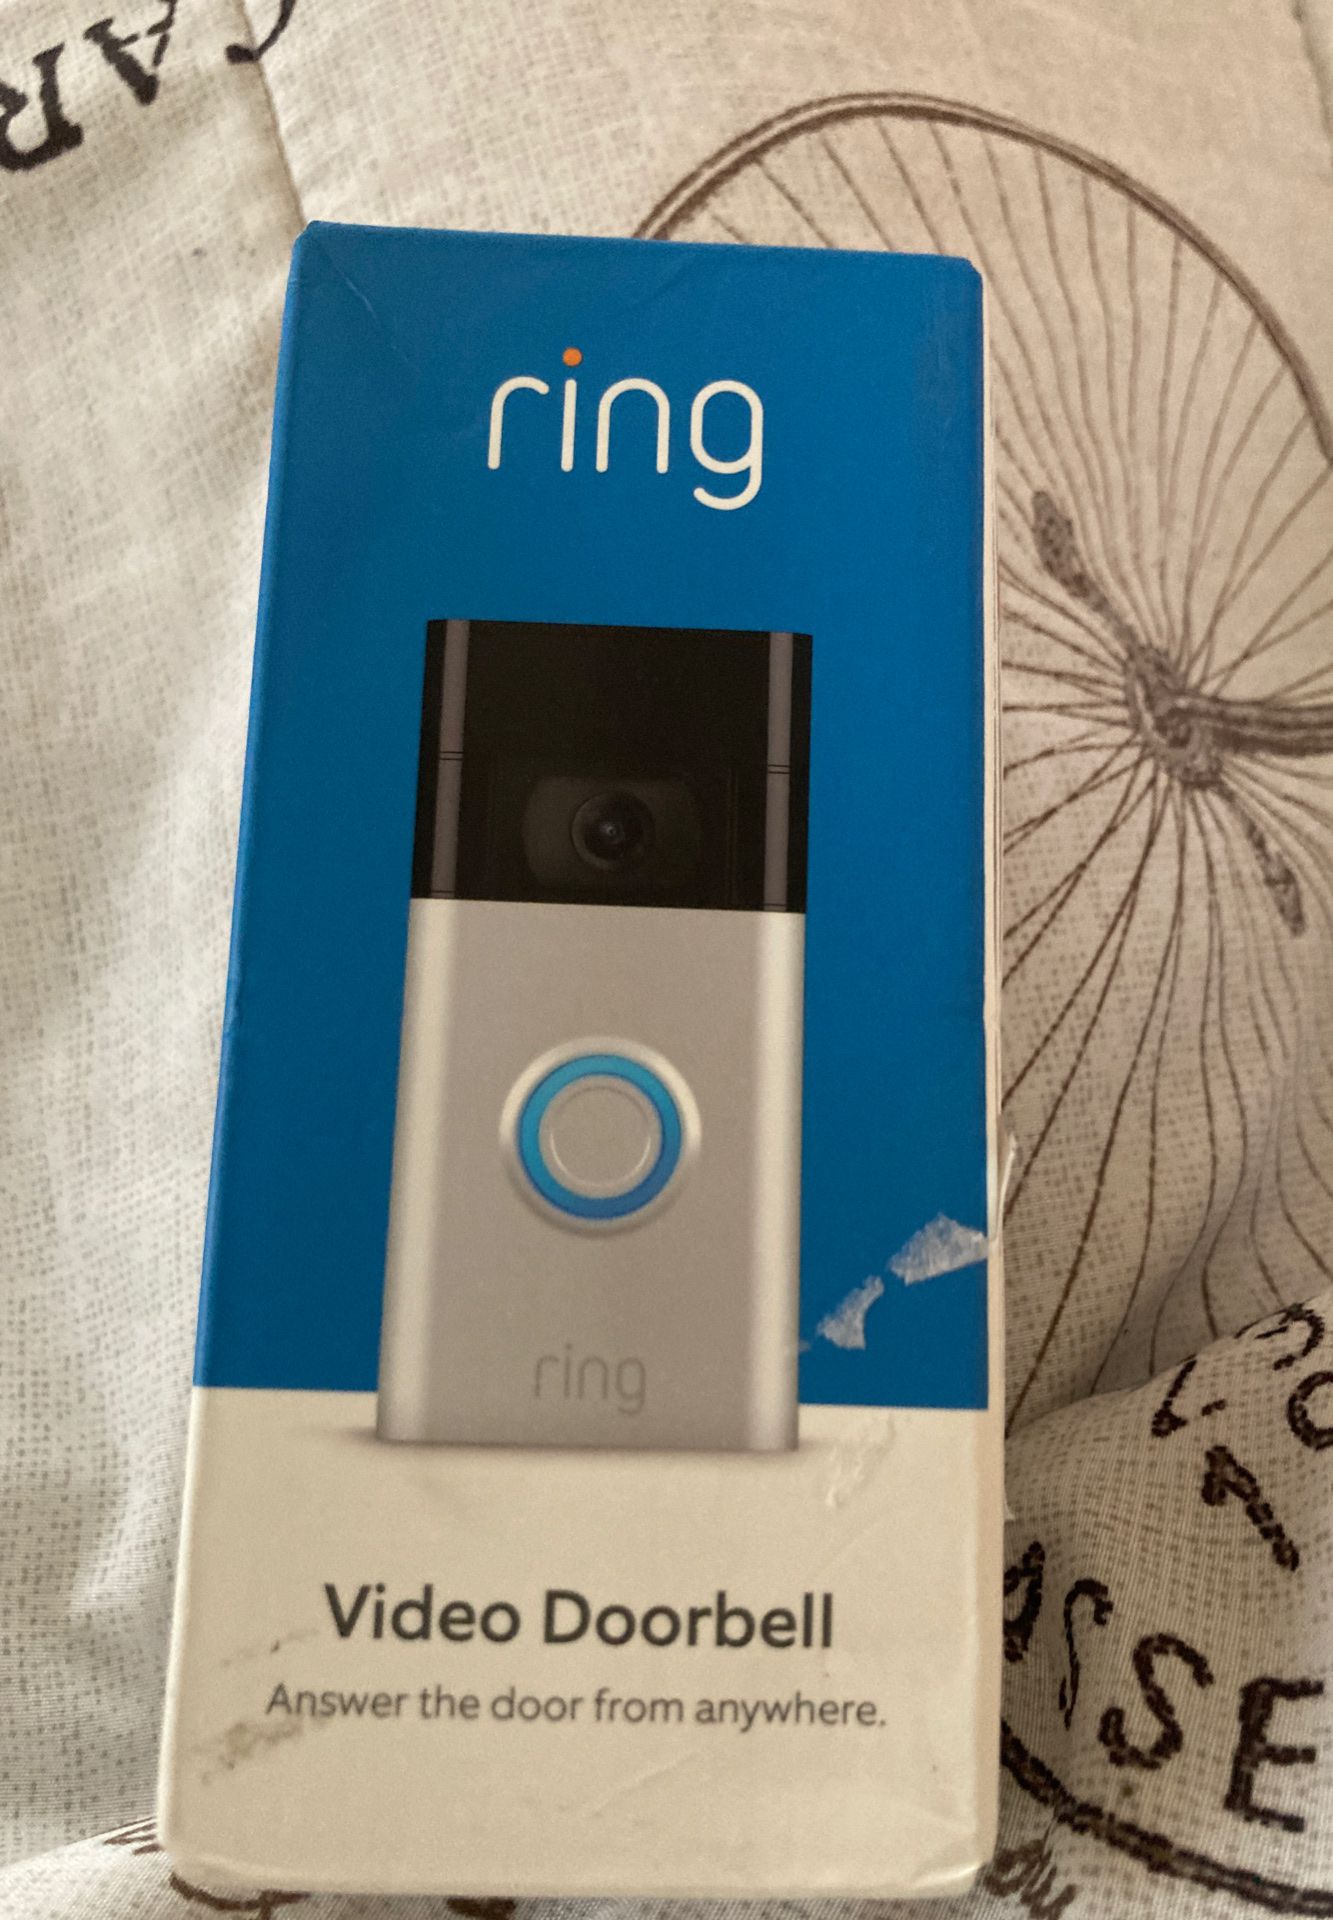 Ring doorbell camera